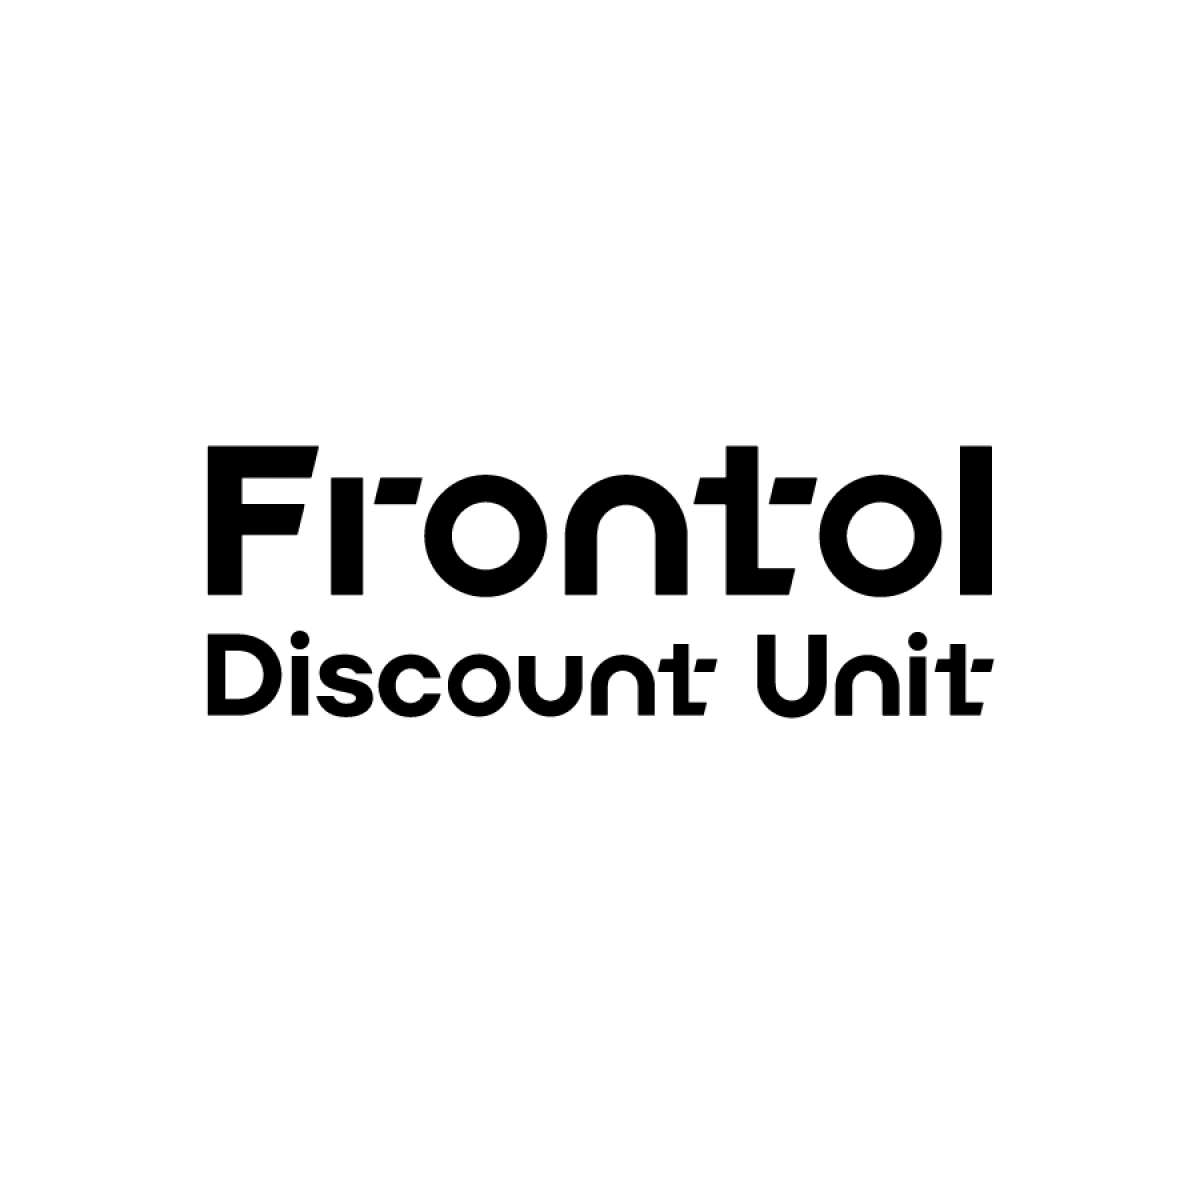 Frontol discount